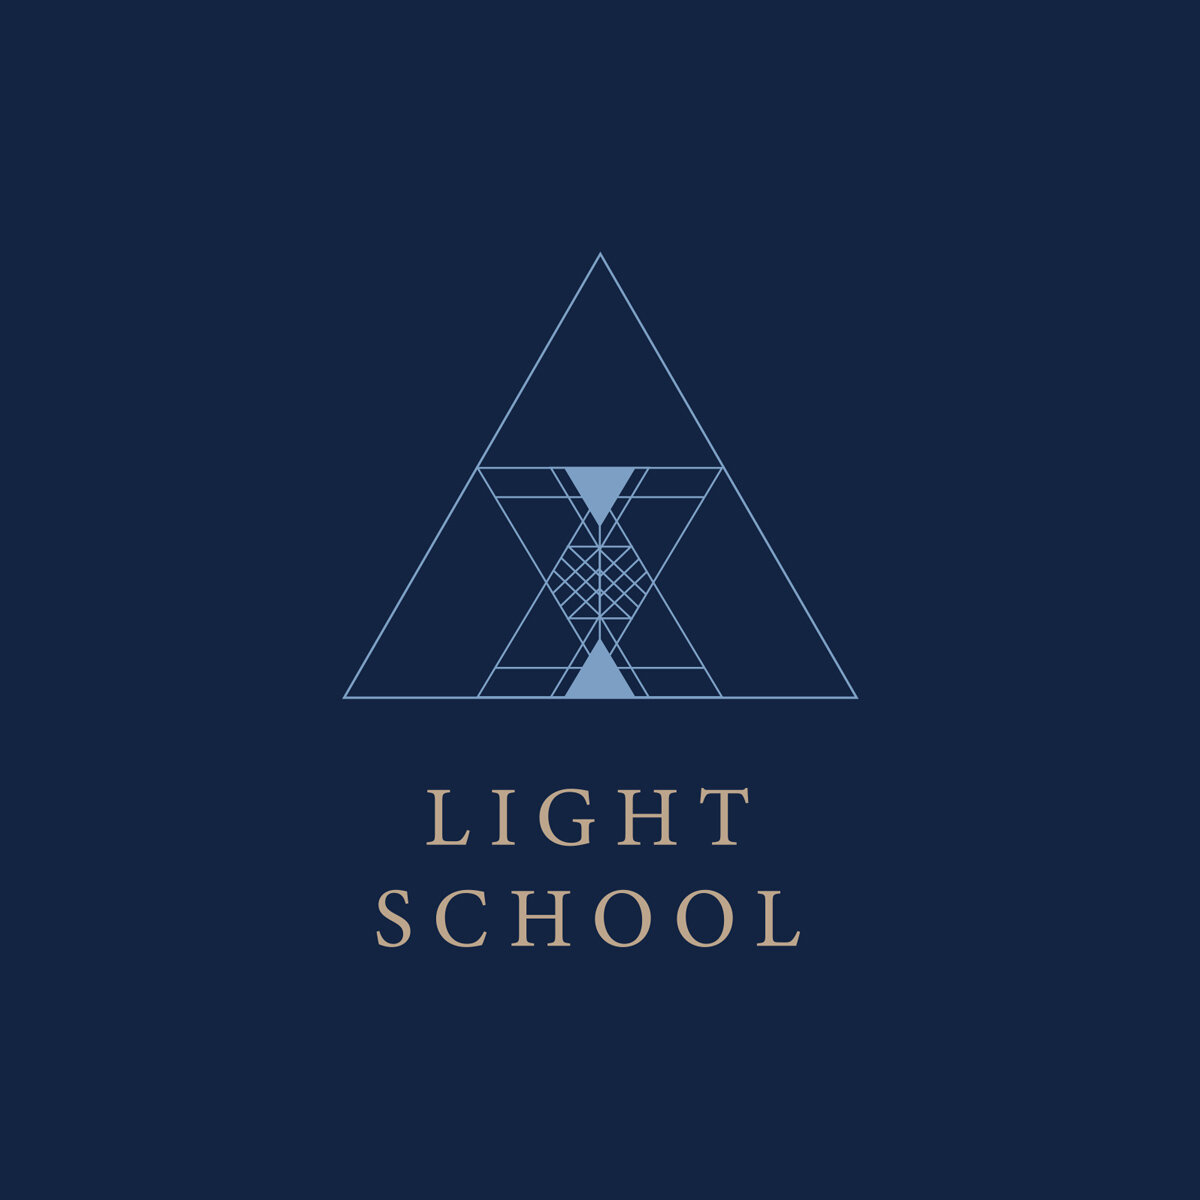 LightSchool_logo_Luminova.jpg